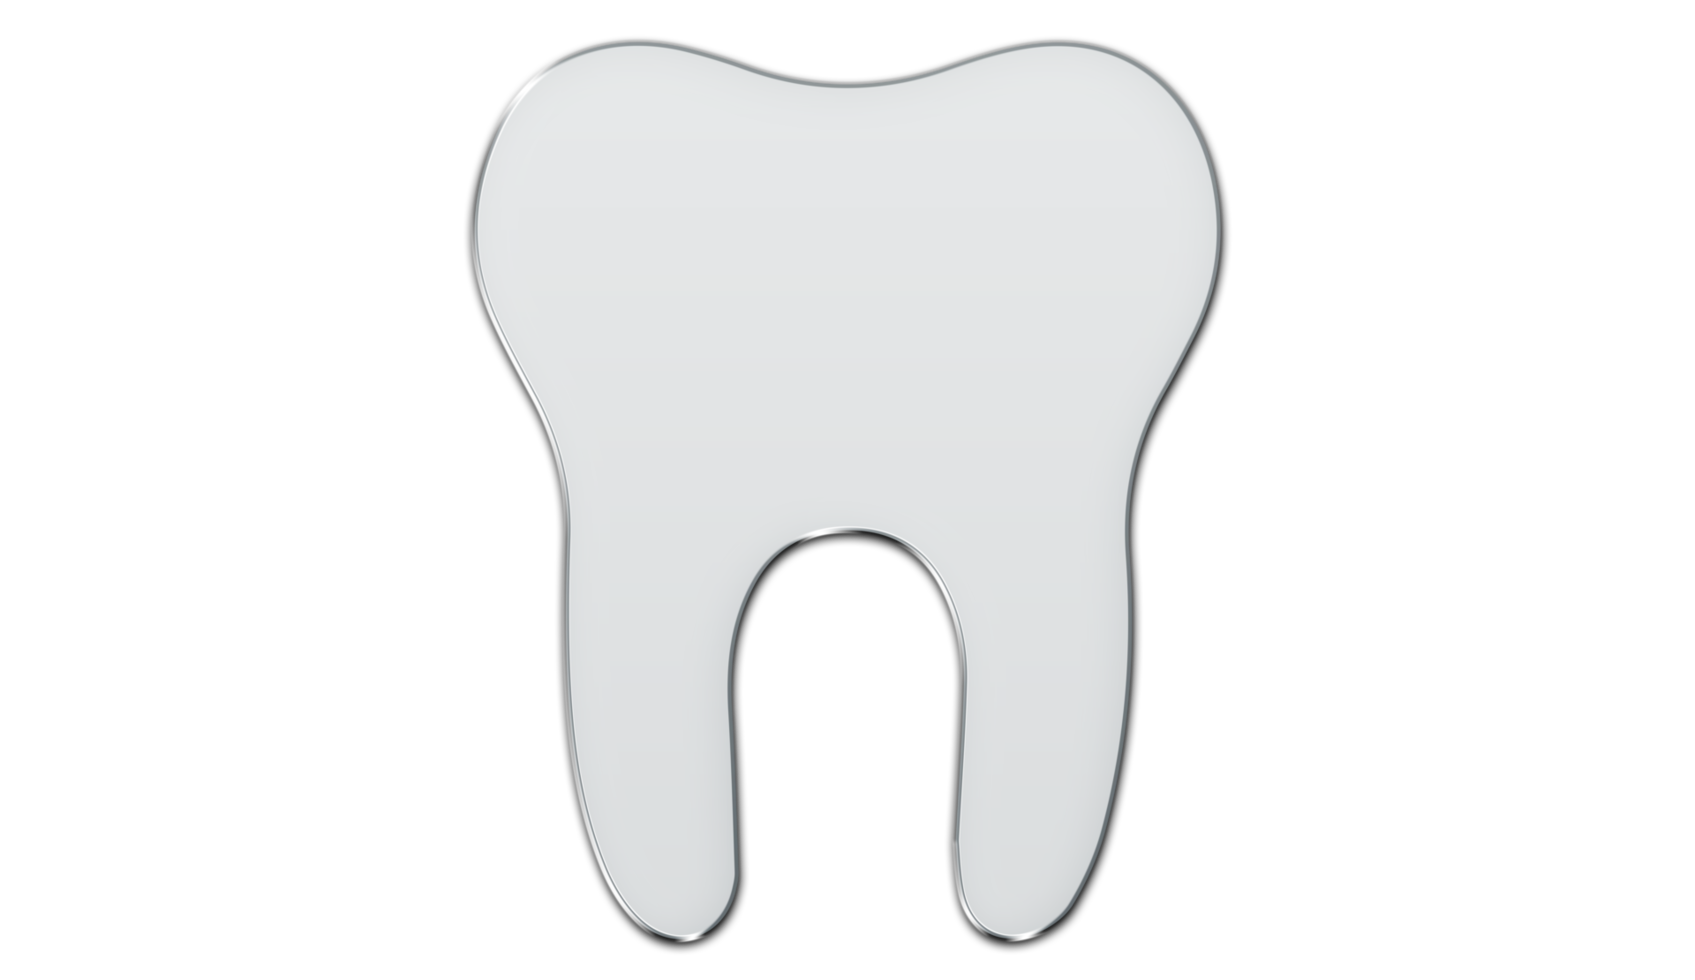 Zahnsymbol l auf transparentem Hintergrund png